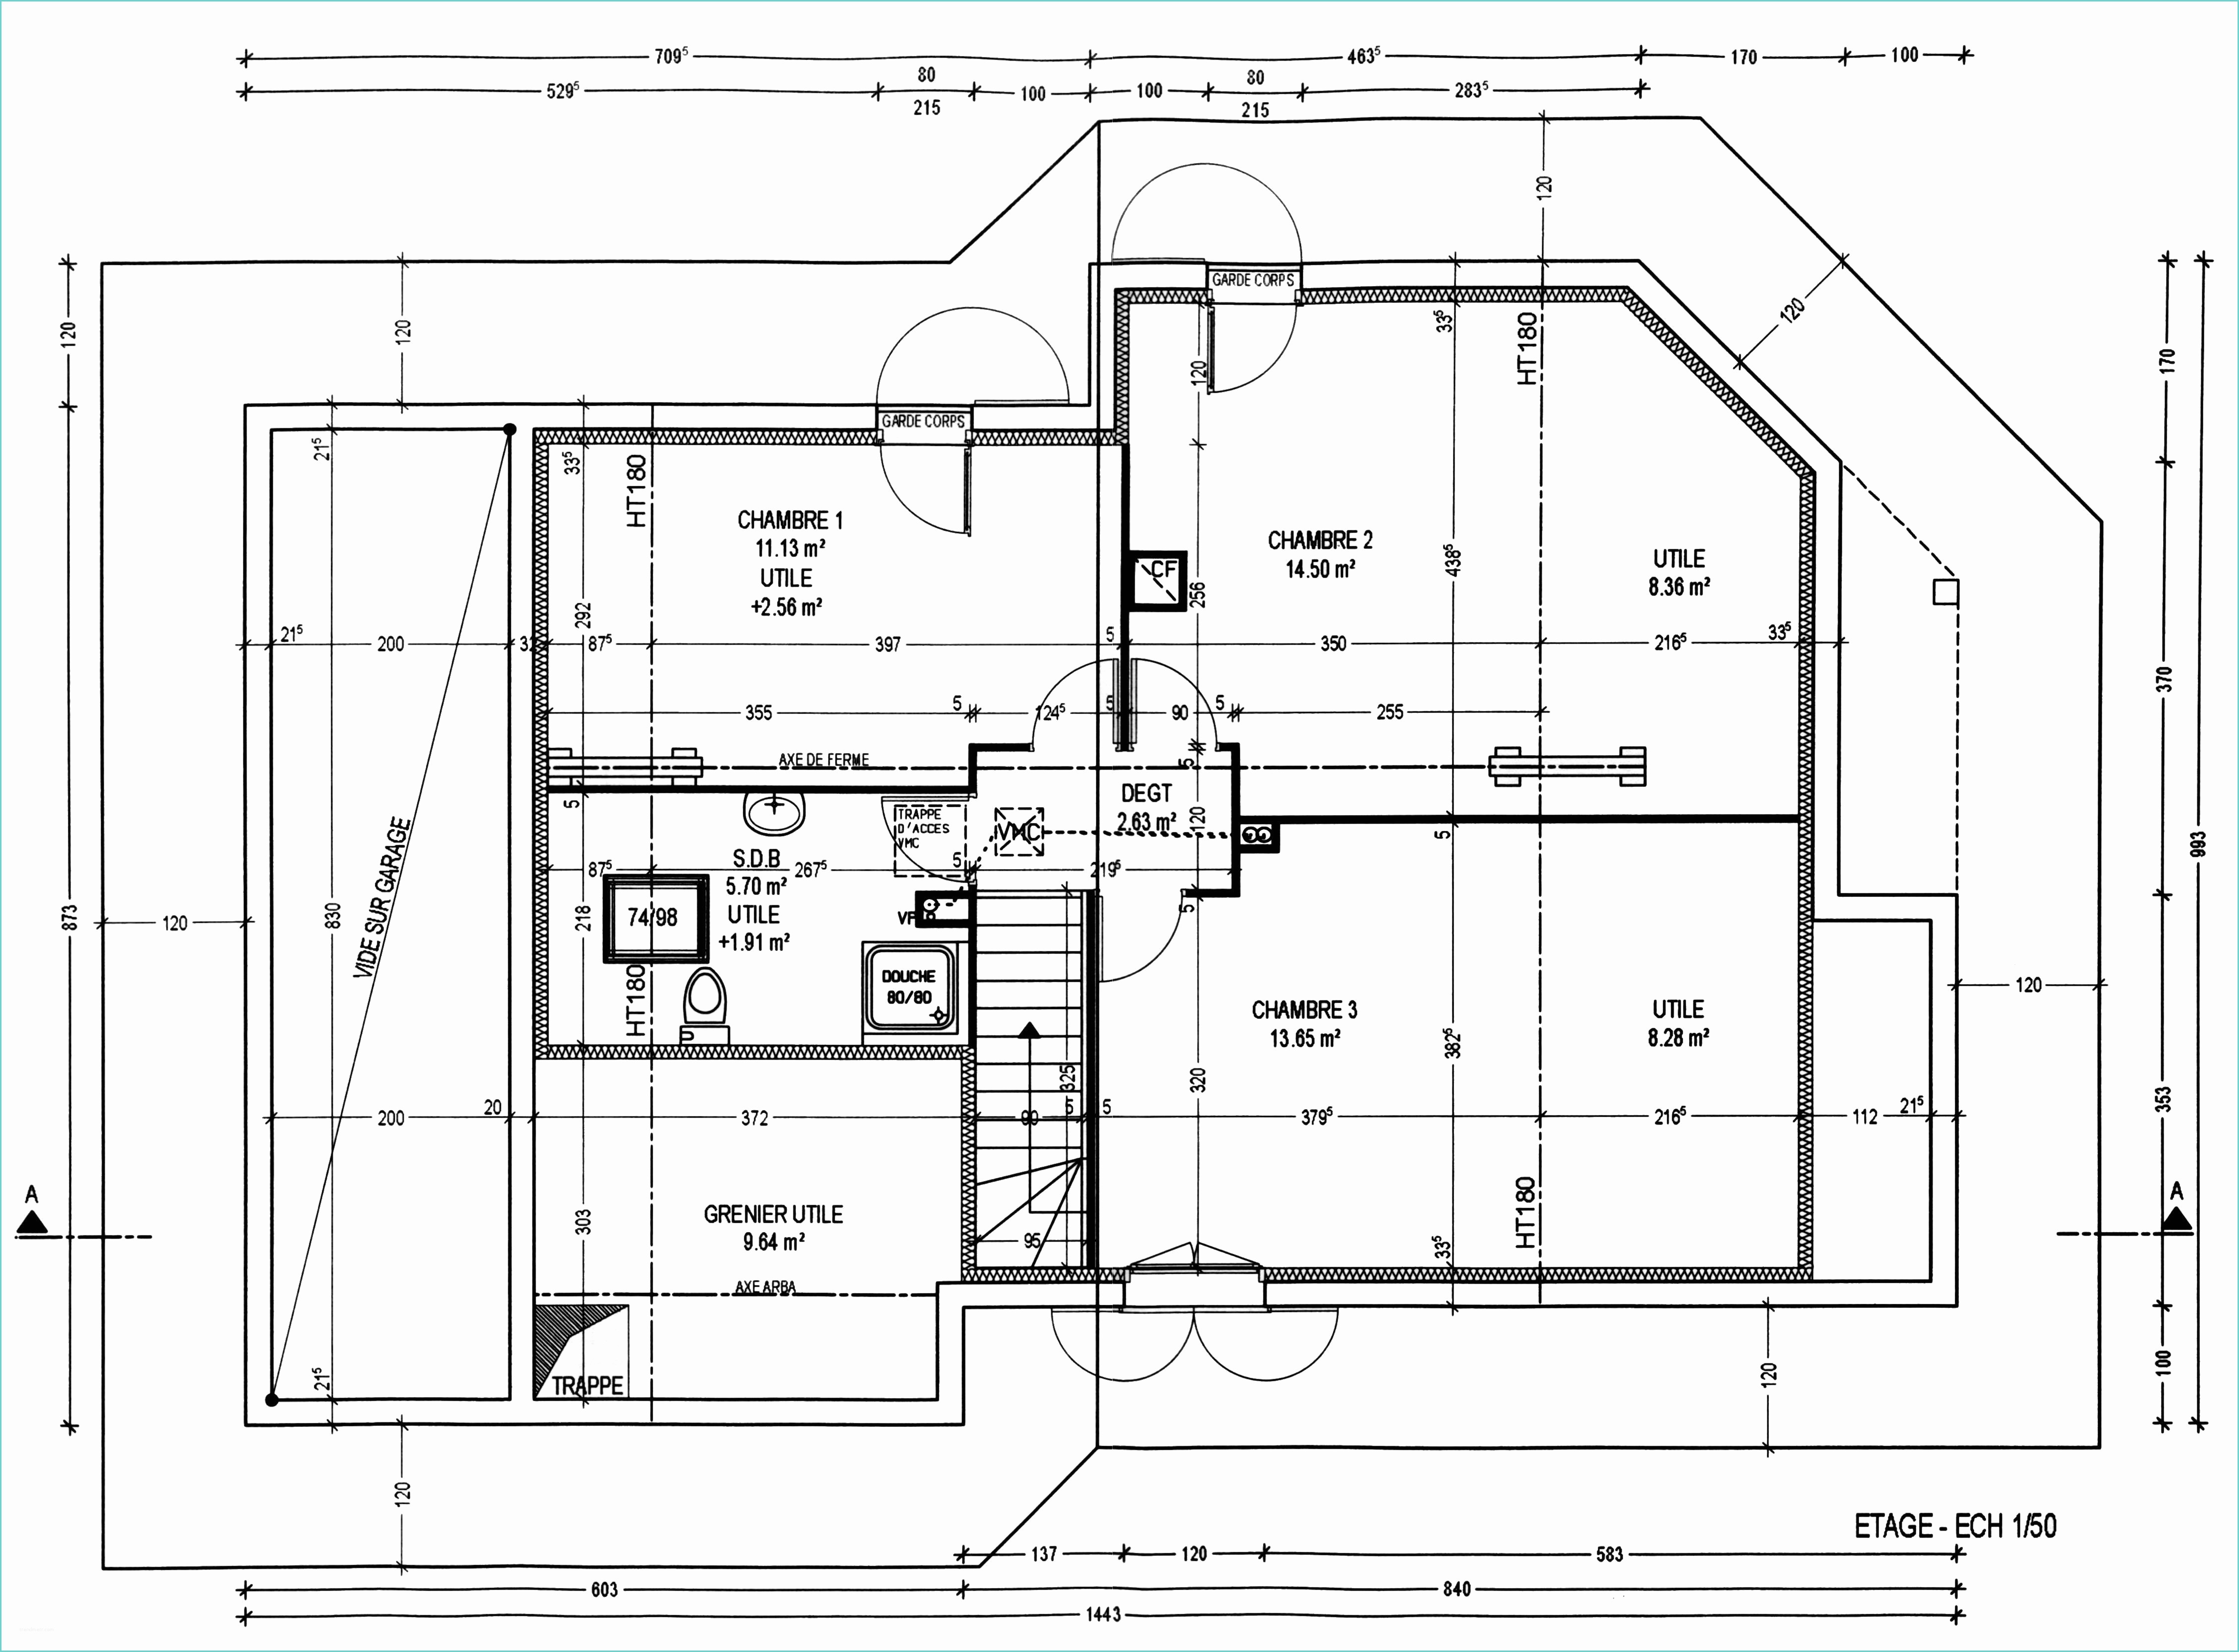 Plan De Maison Moderne Gratuit A Telecharger Logiciel Pour Construire Sa Maison 14 Plan Maison